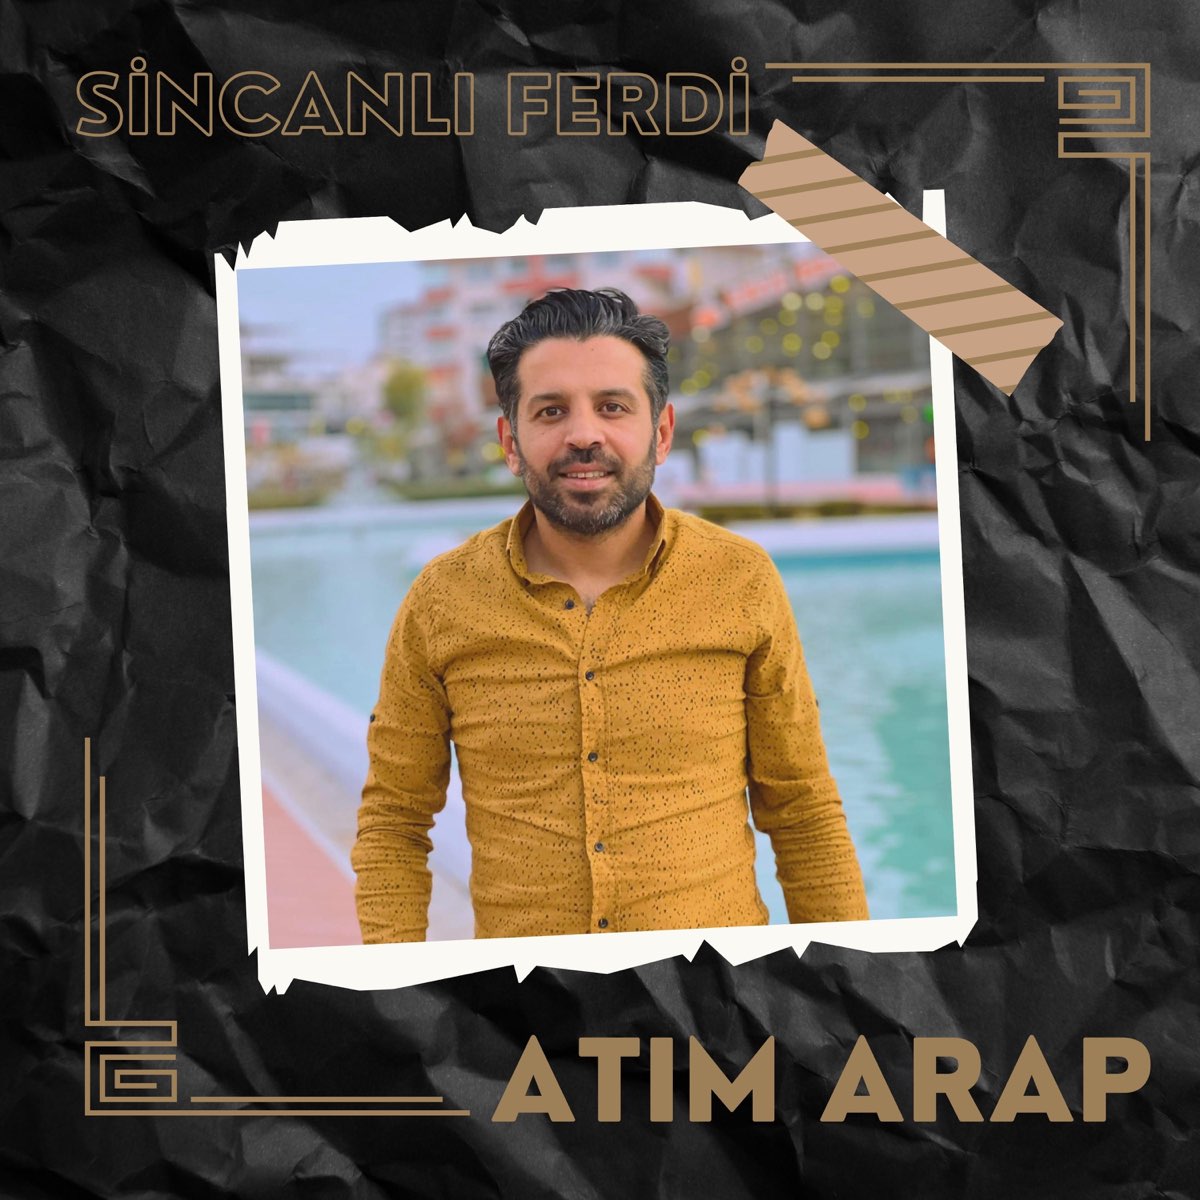 Atım Arap - Single - Album by Sincanlı Ferdi - Apple Music